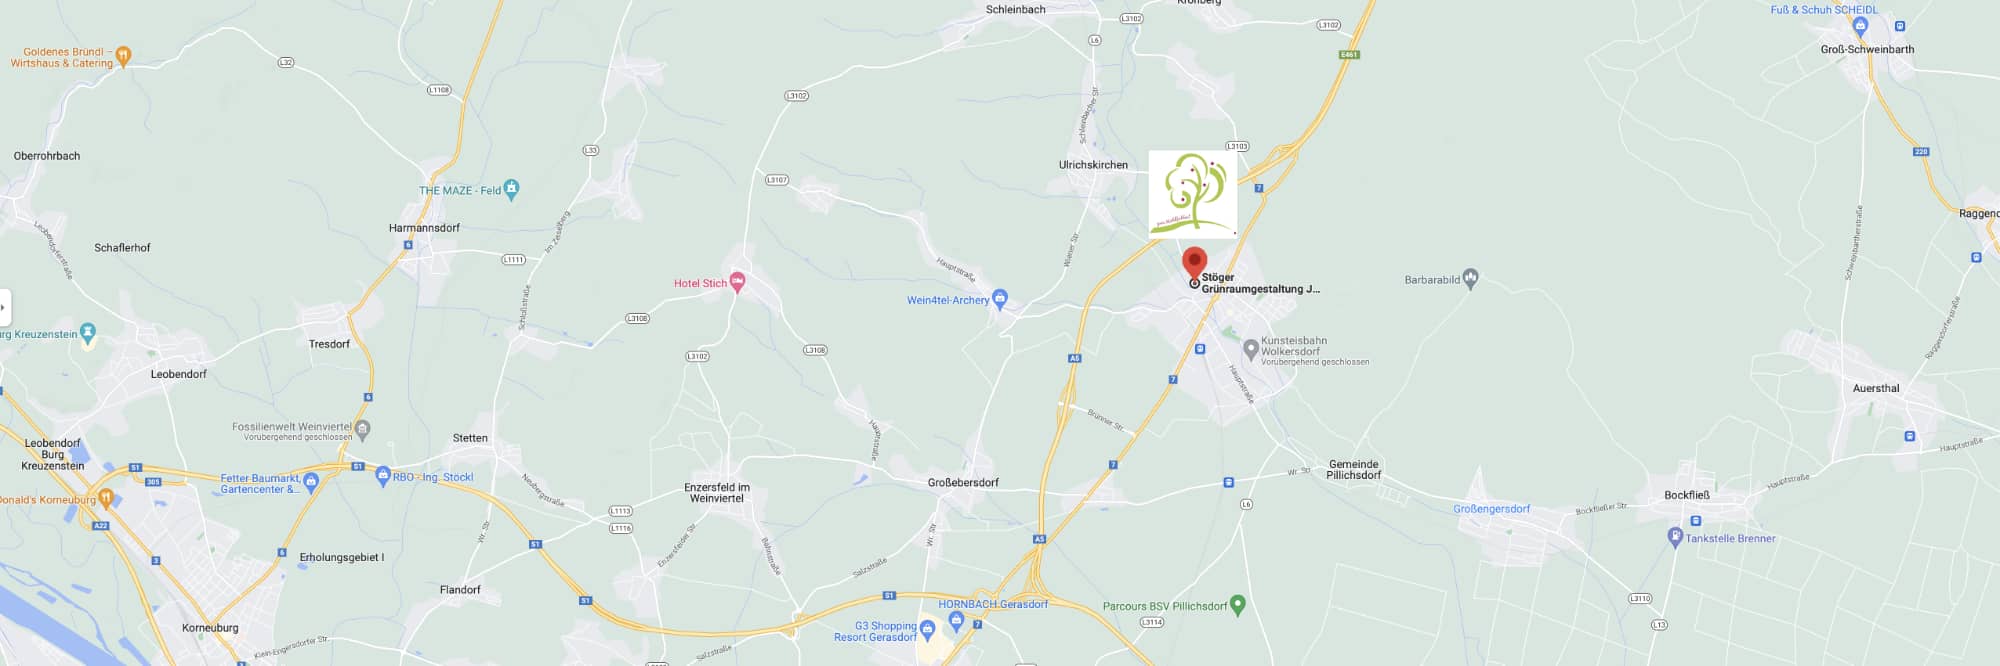 Bild von Google Maps mit dem Standort von Stöger Grünraumgestaltung mit Link zu Google Maps - öffnet in separatem Fenster